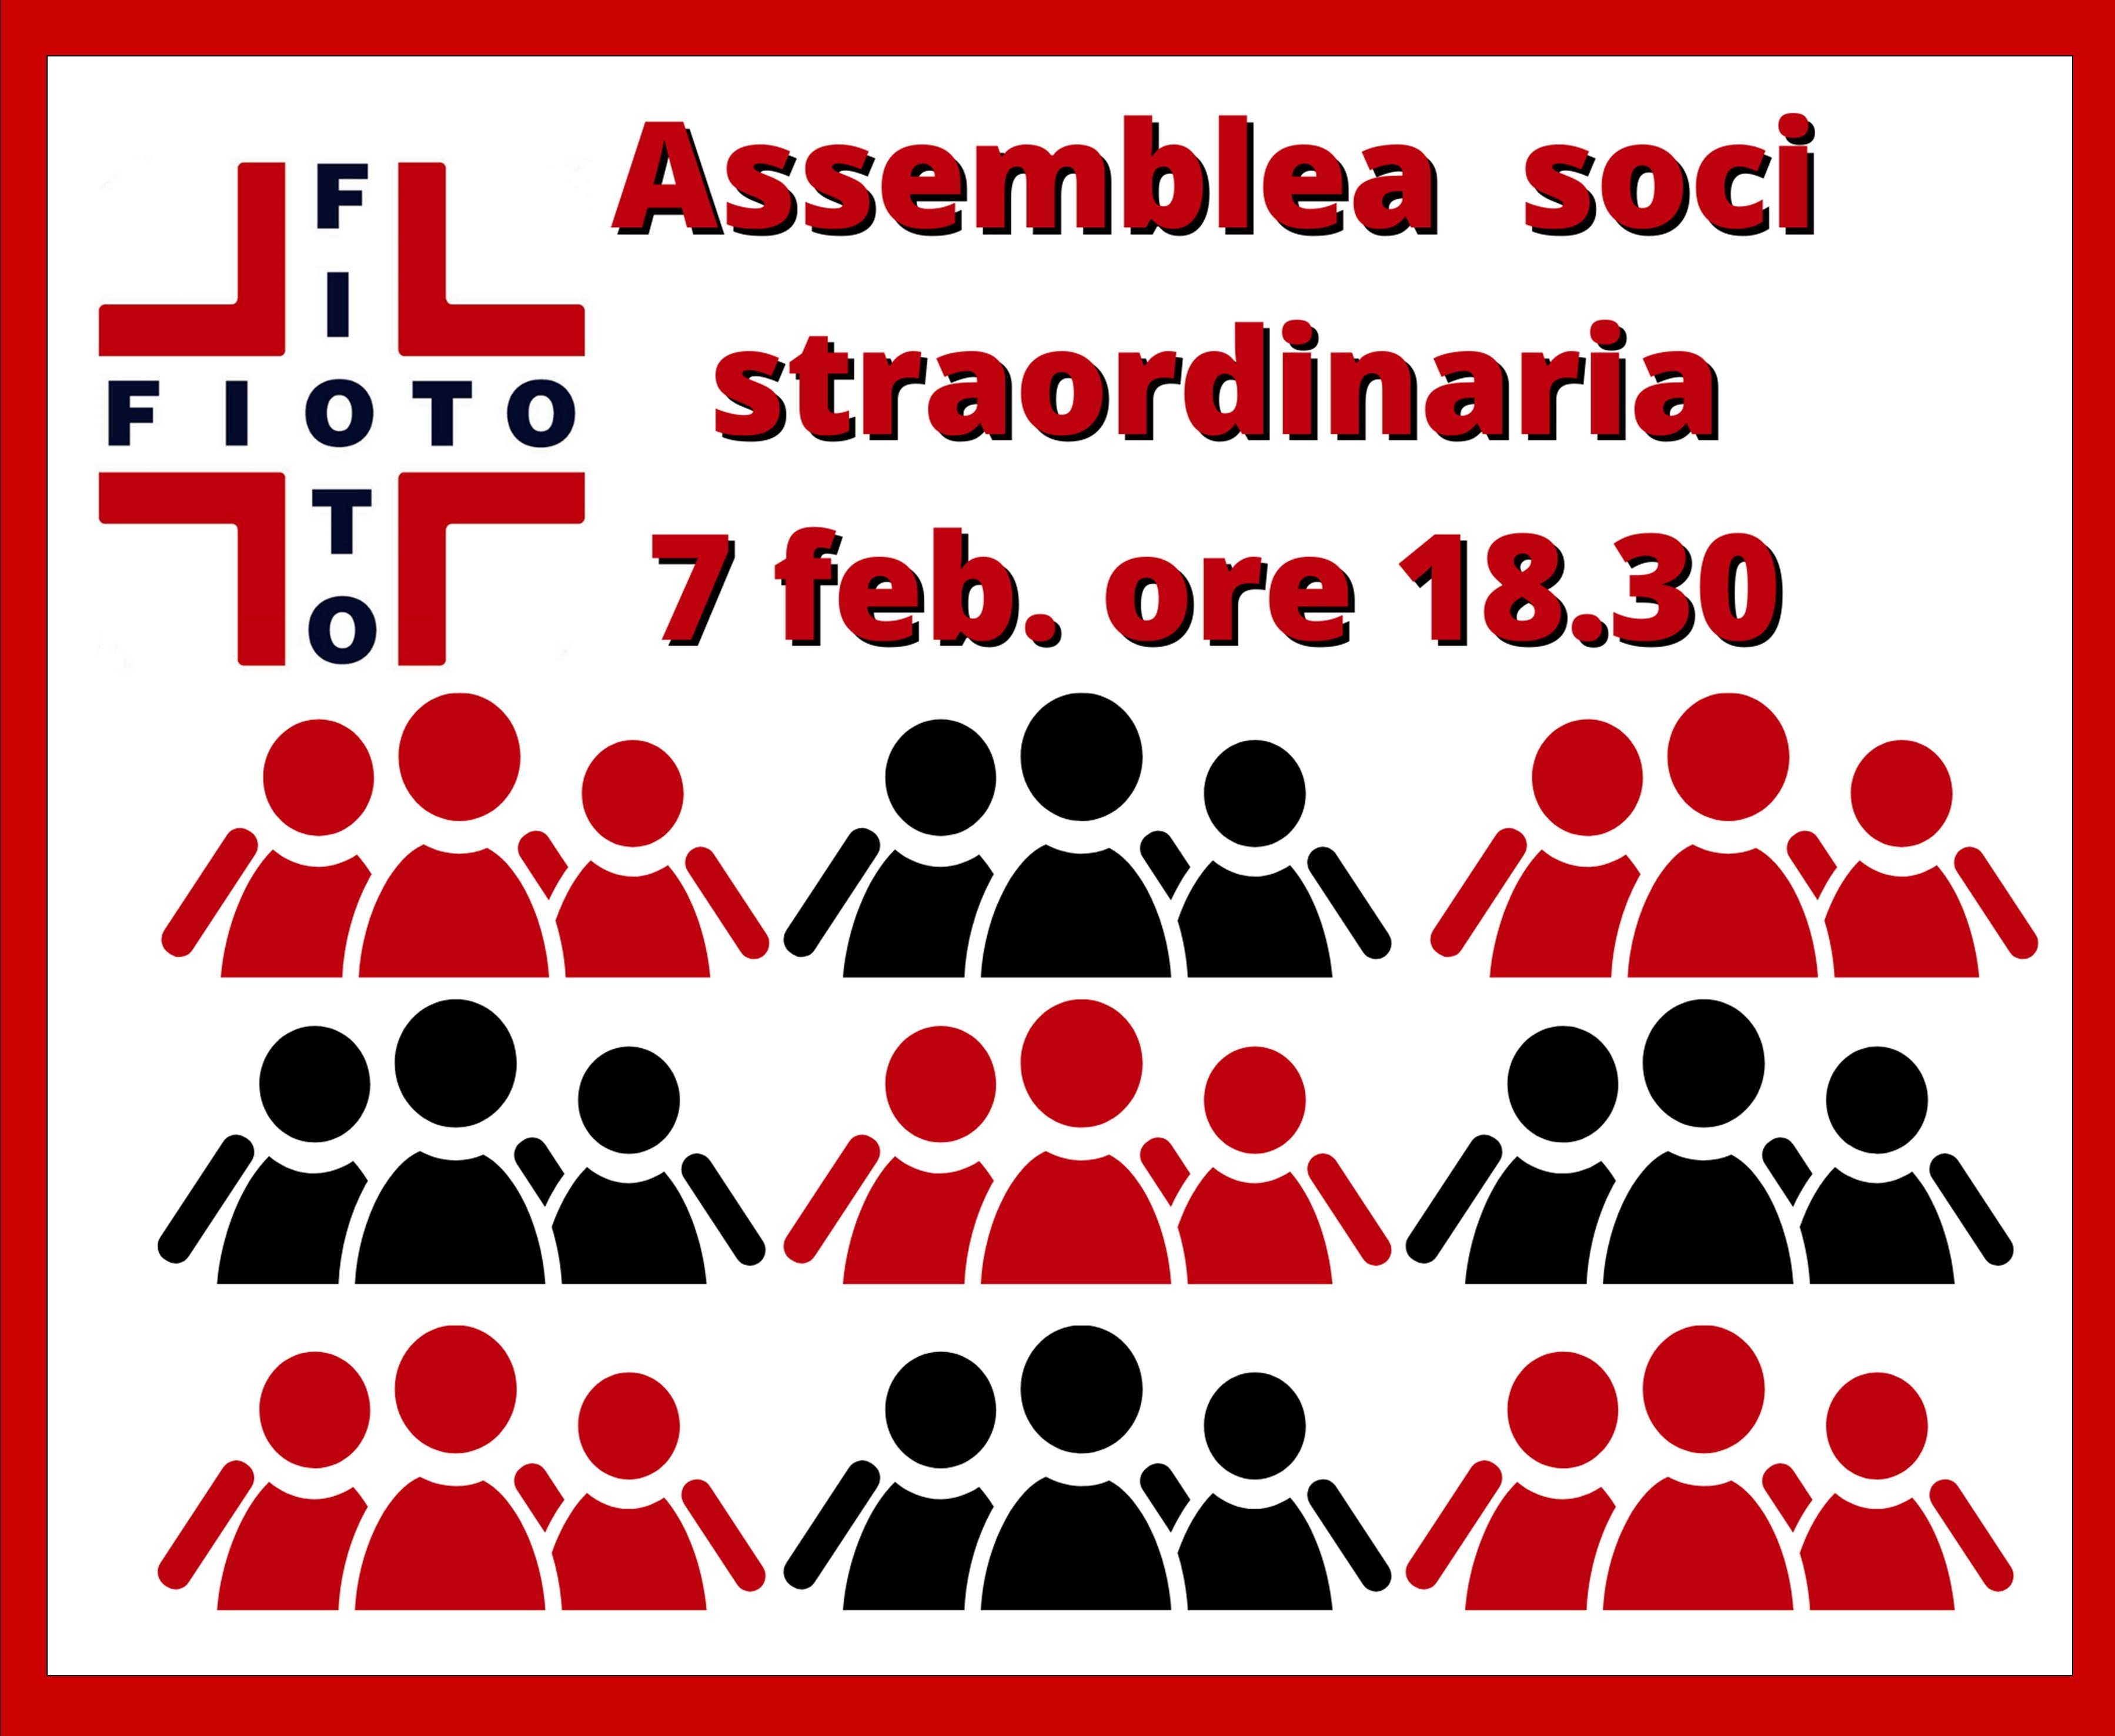 ASSEMBLEA STRAORDINARIA SOCI FIOTO 7 FEB. 2022 ORE 18.30